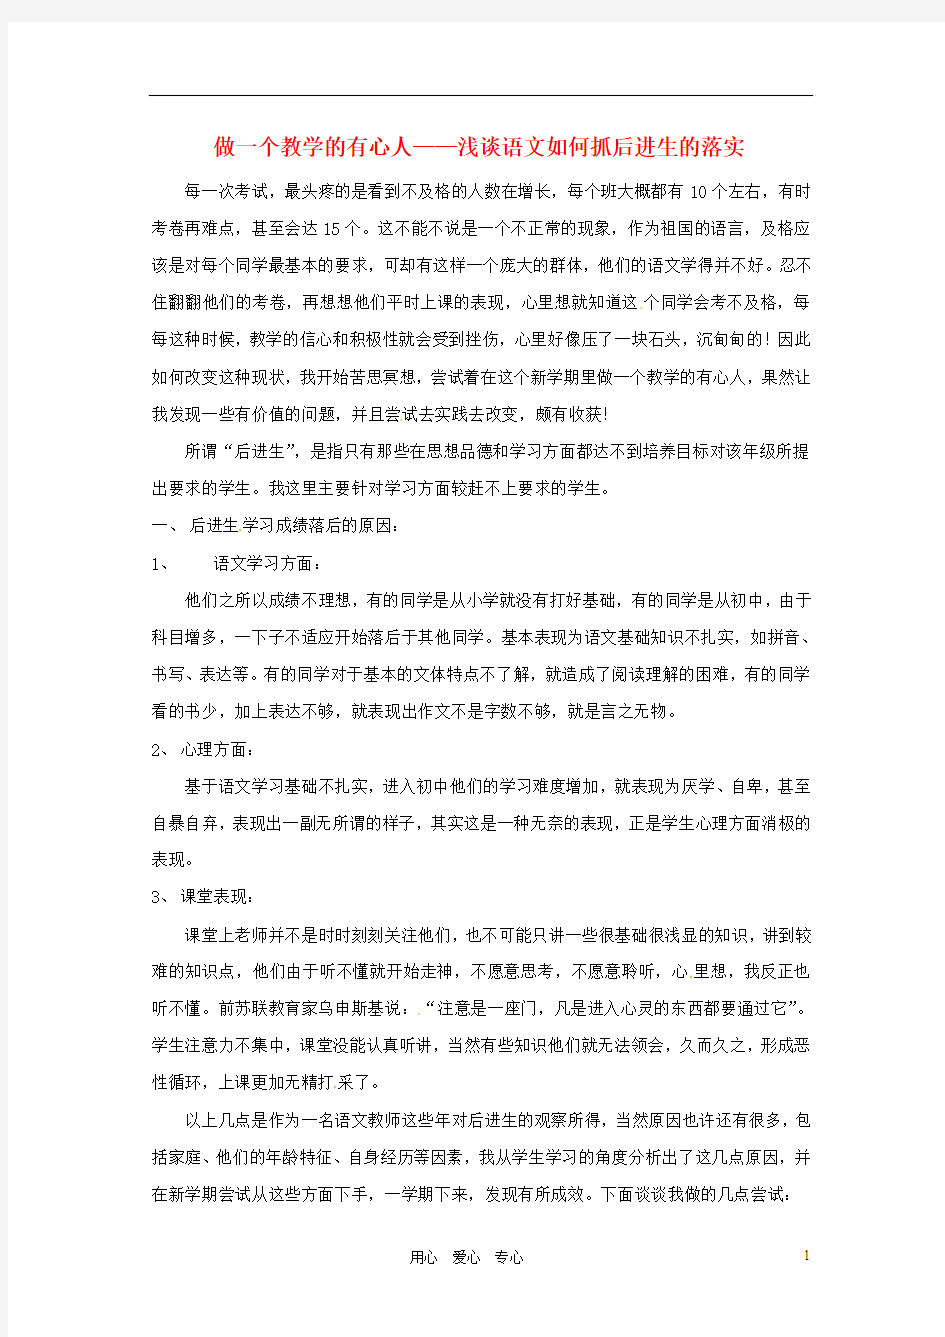 福建省石狮市凤里中学初中语文教学论文 做一个教学的有心人 语文版